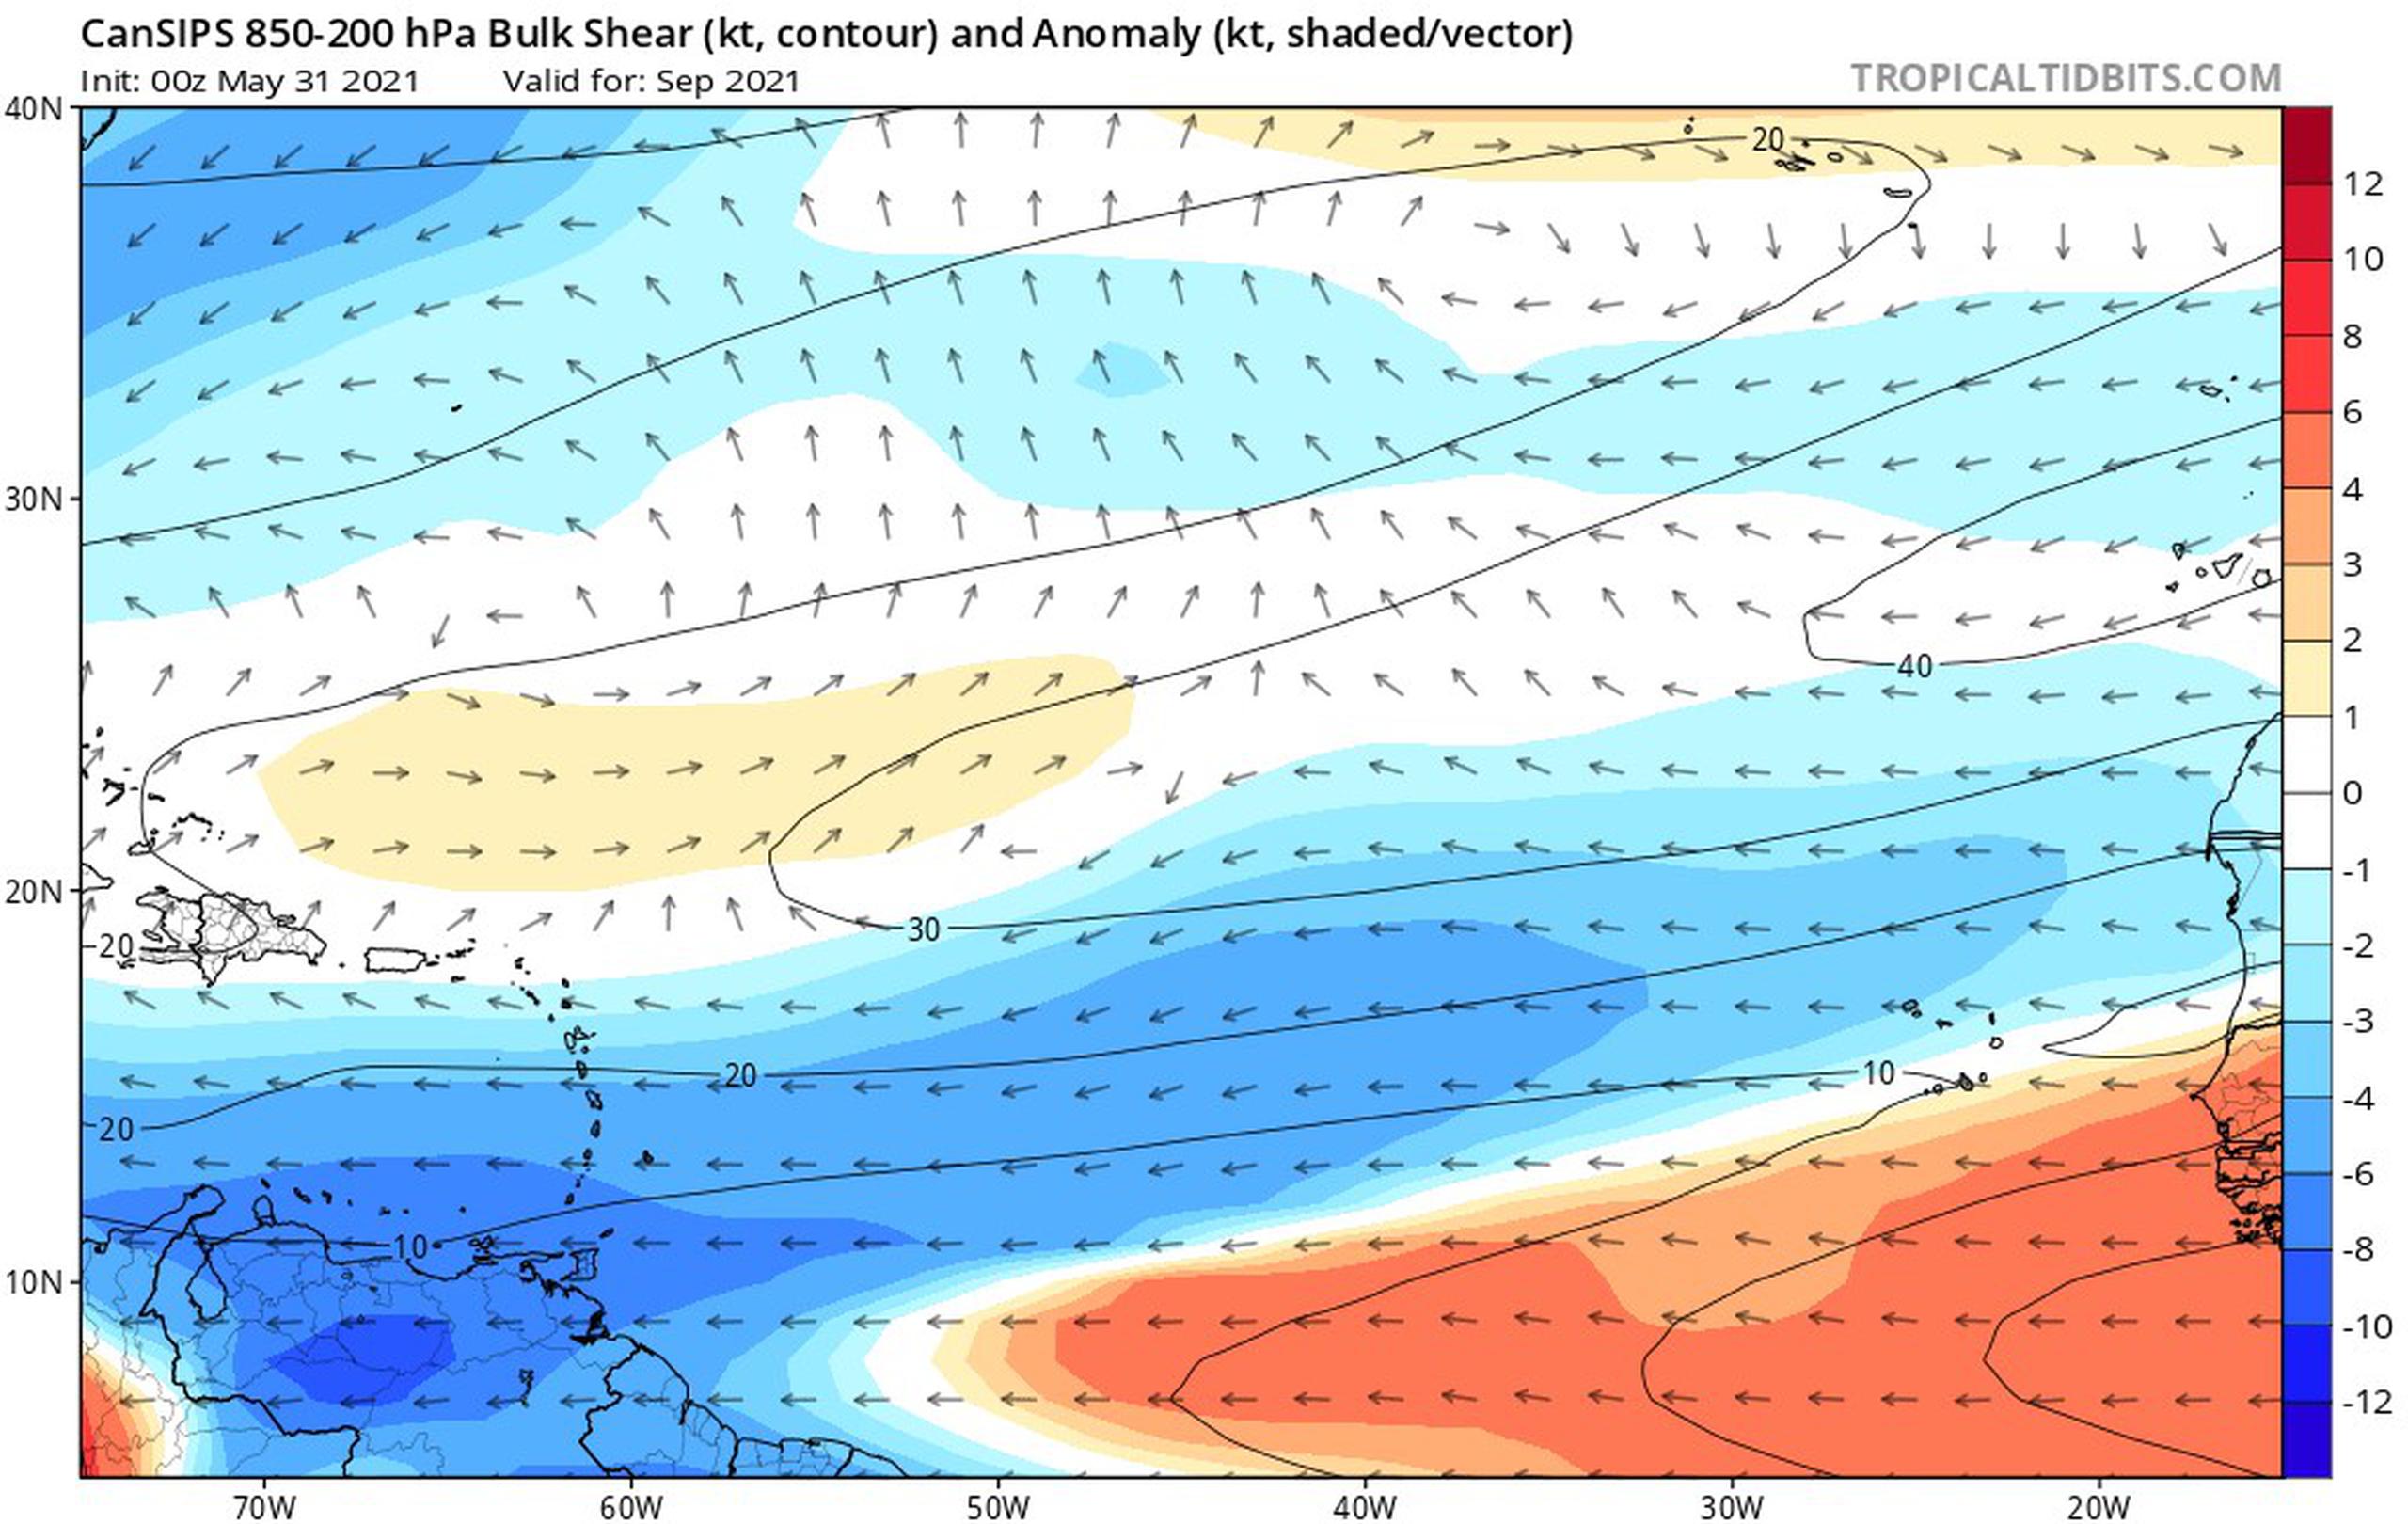 Vientos cortantes estimados por modelo para septiembre. Colores azules representan pocos vientos cortantes para el Caribe.